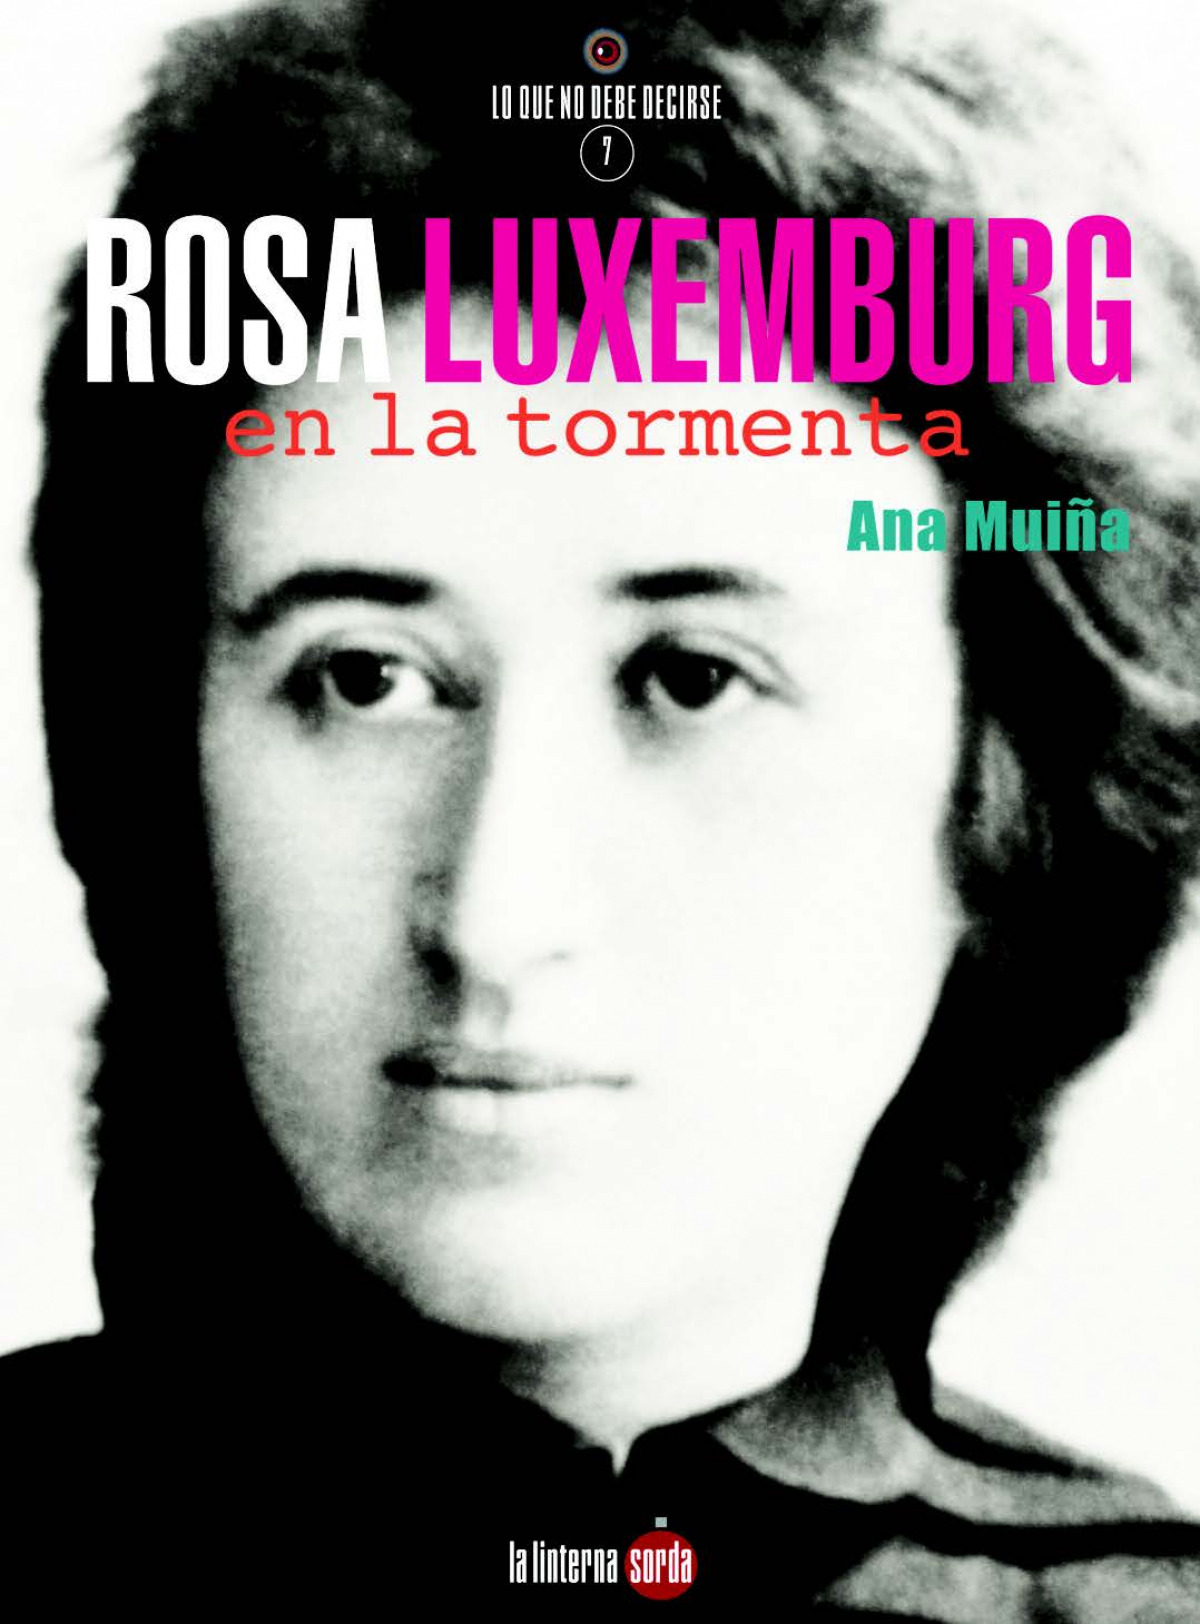 Rosa luxemburg, en la tormenta - Muiña, Ana